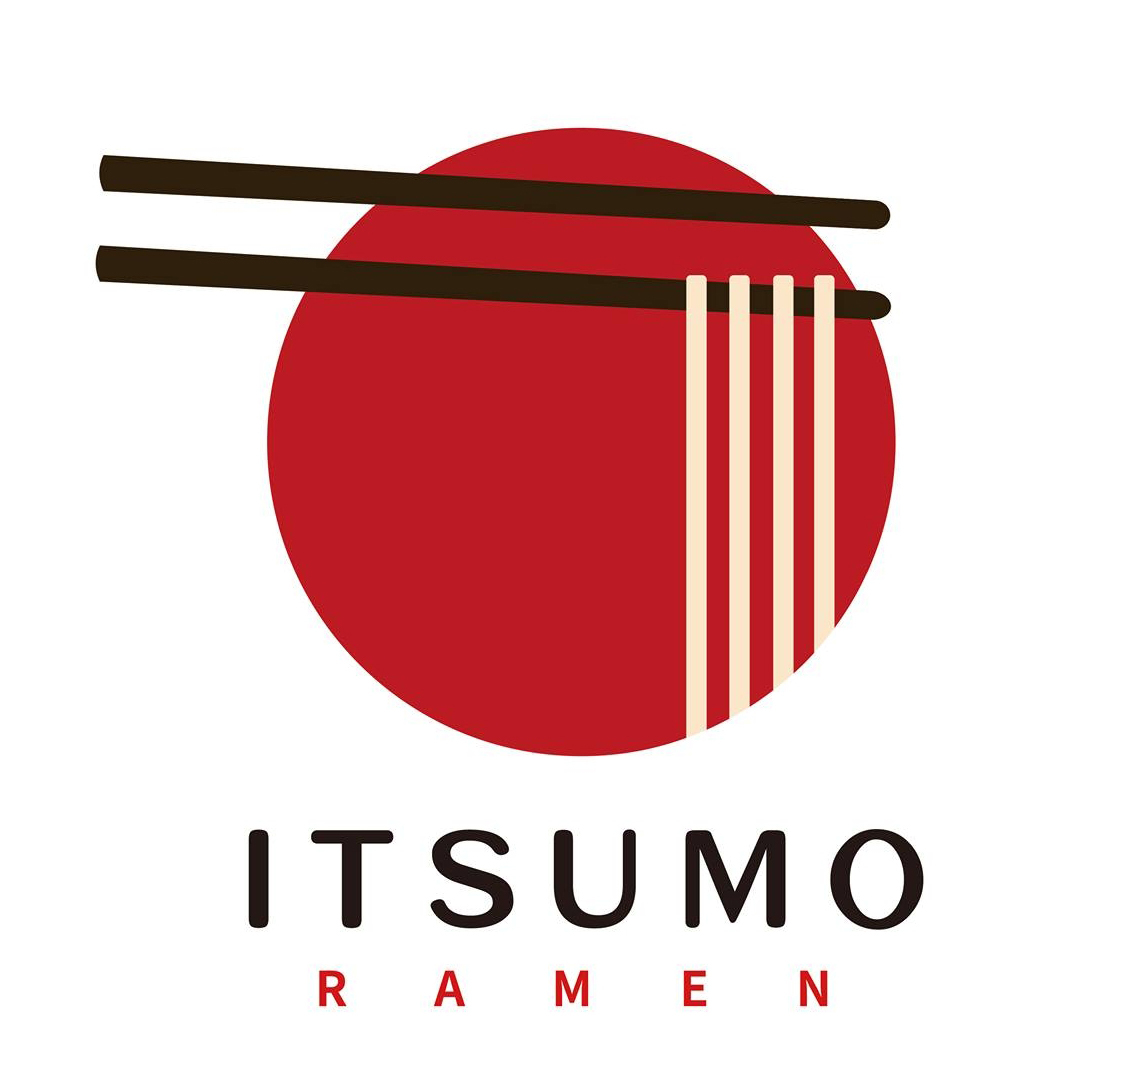 ITSUMO Ramen logo top